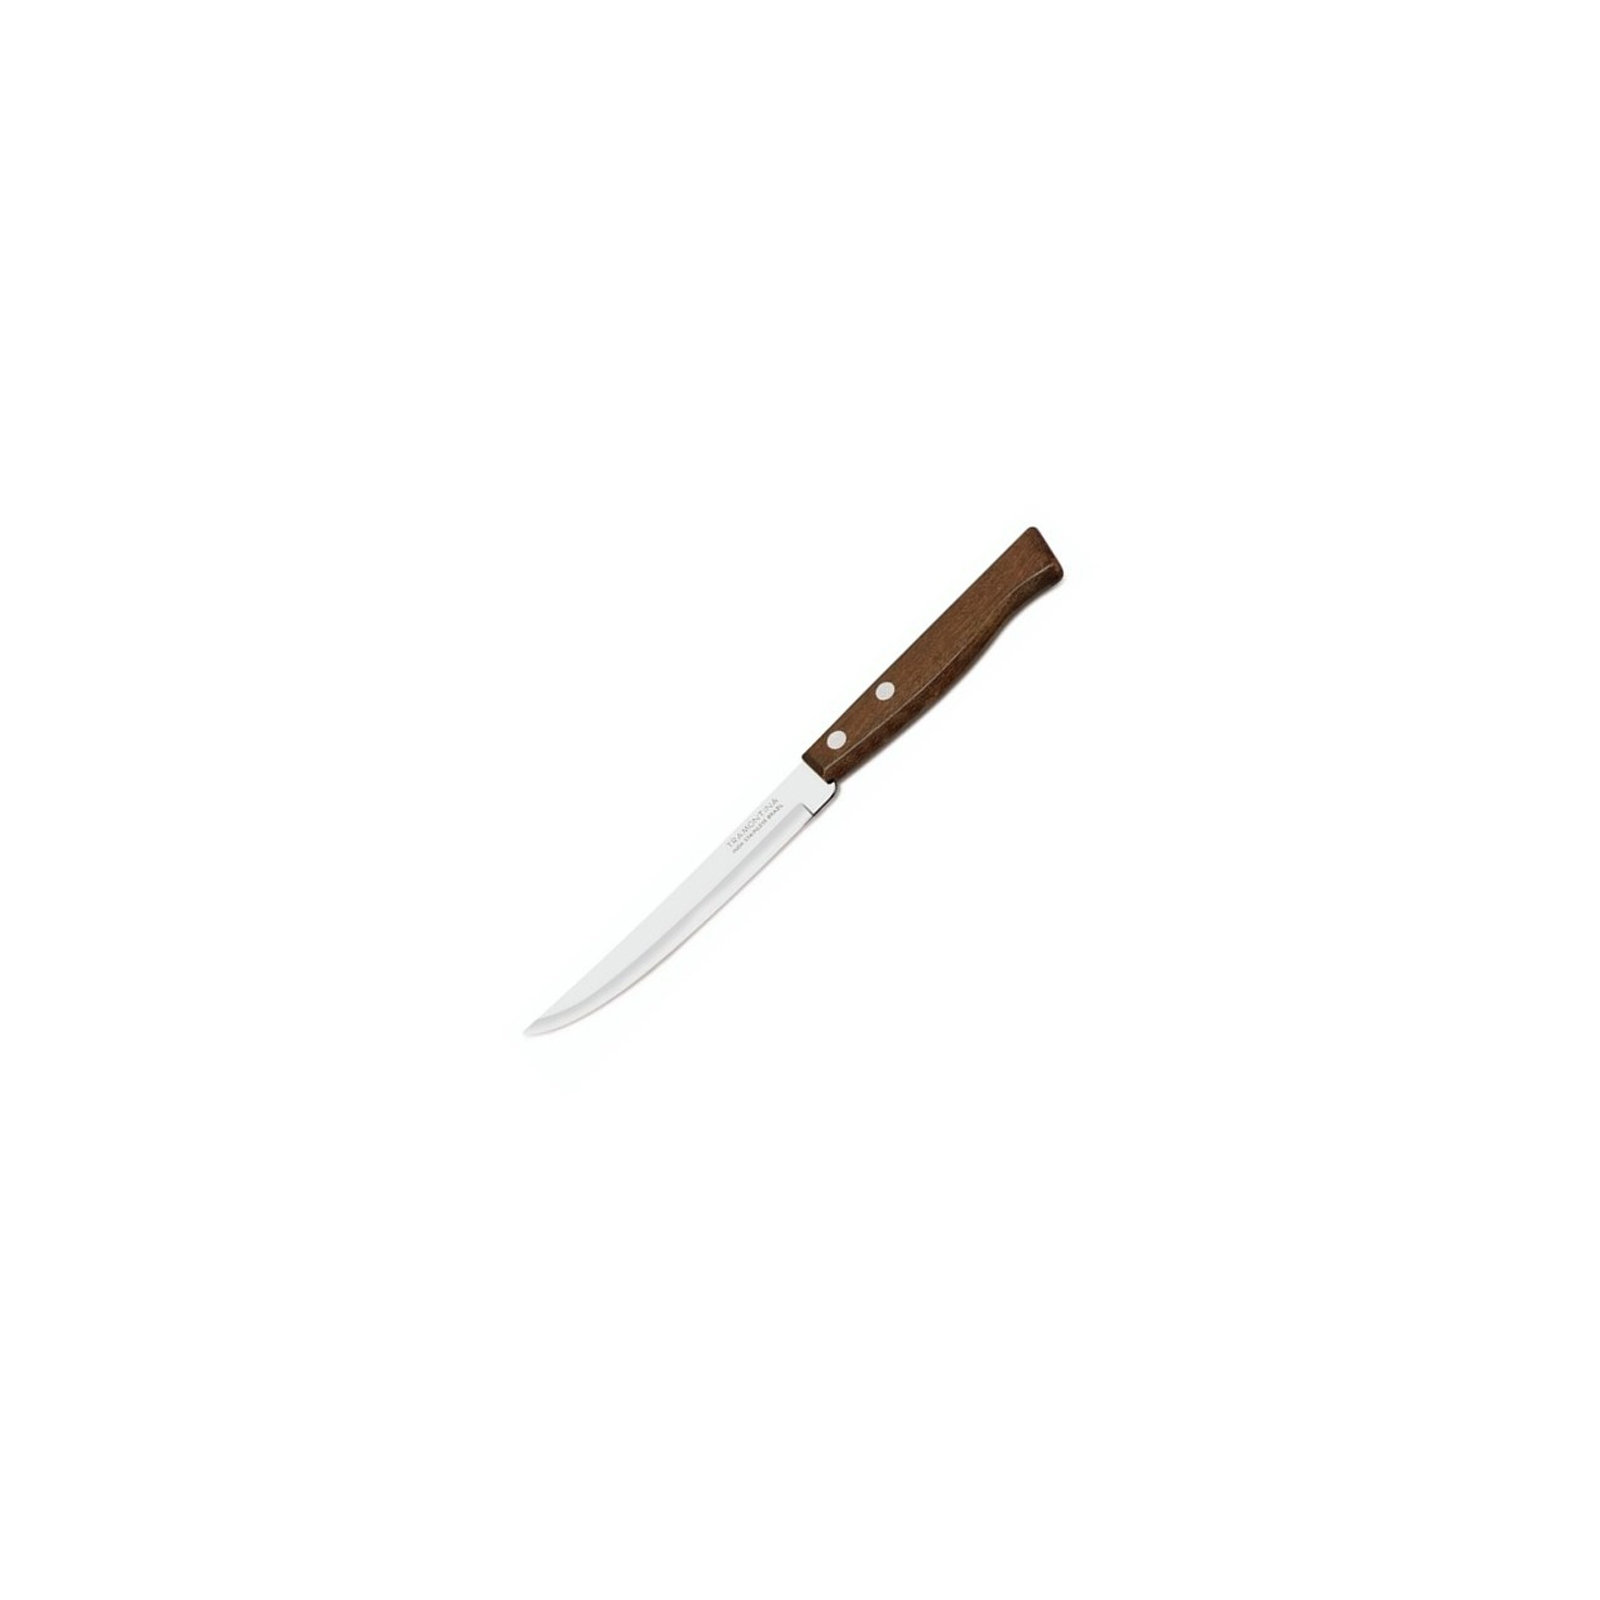 Кухонный нож Tramontina Tradicional для стейка 127 мм (22212/105)